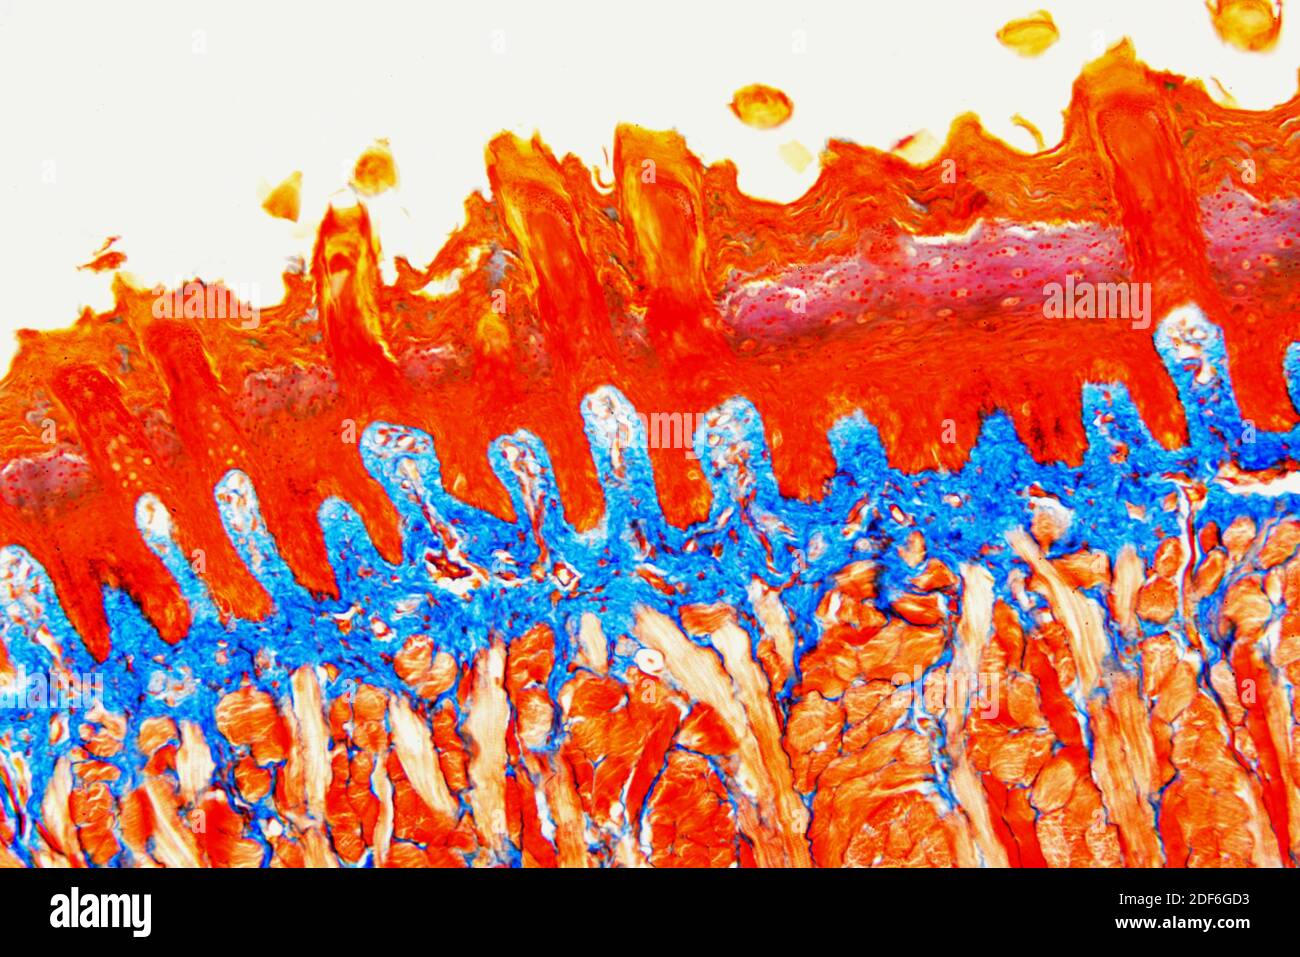 Sezione della lingua che mostra papille linguali, papille gustative, muscoli striati e tessuto connettivo. Microscopio ottico X100. Foto Stock